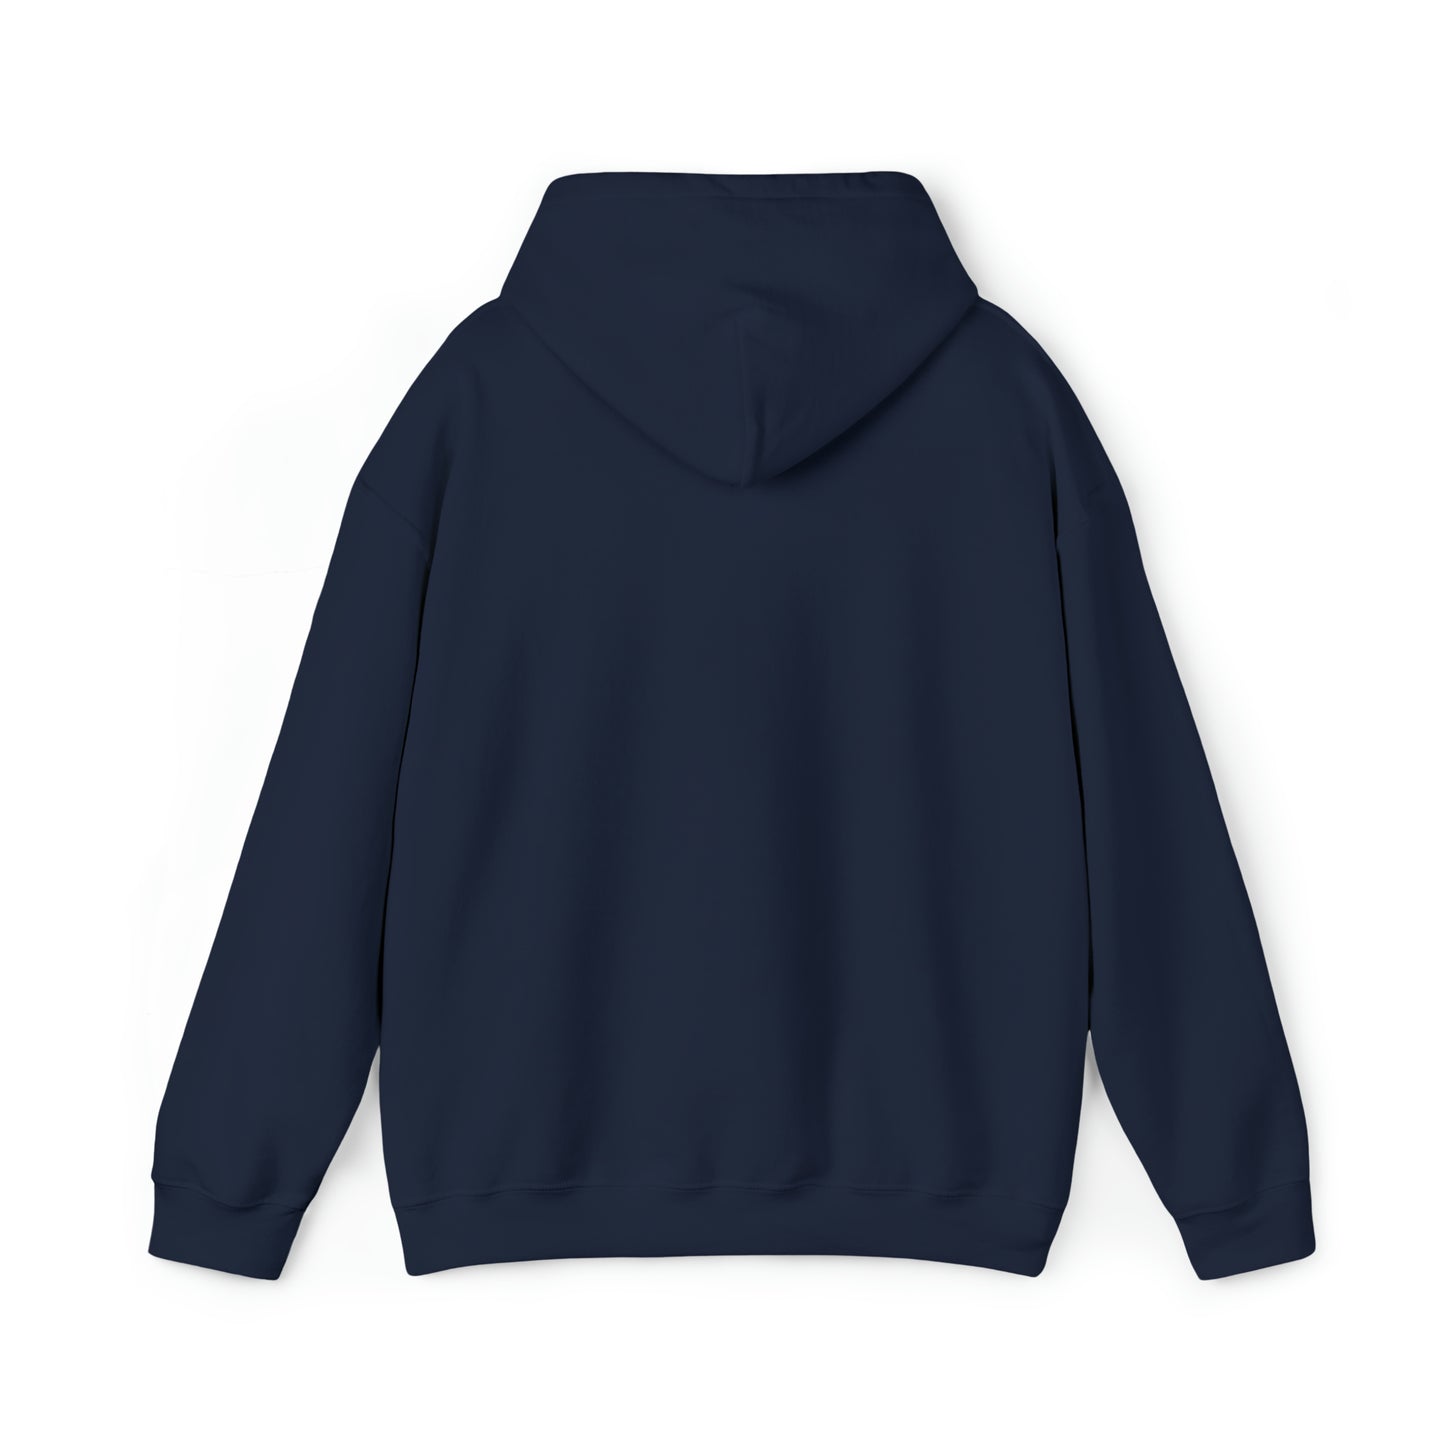 Centennial - Men's Heavy Blend Hooded Sweatshirt - Class Of 2025